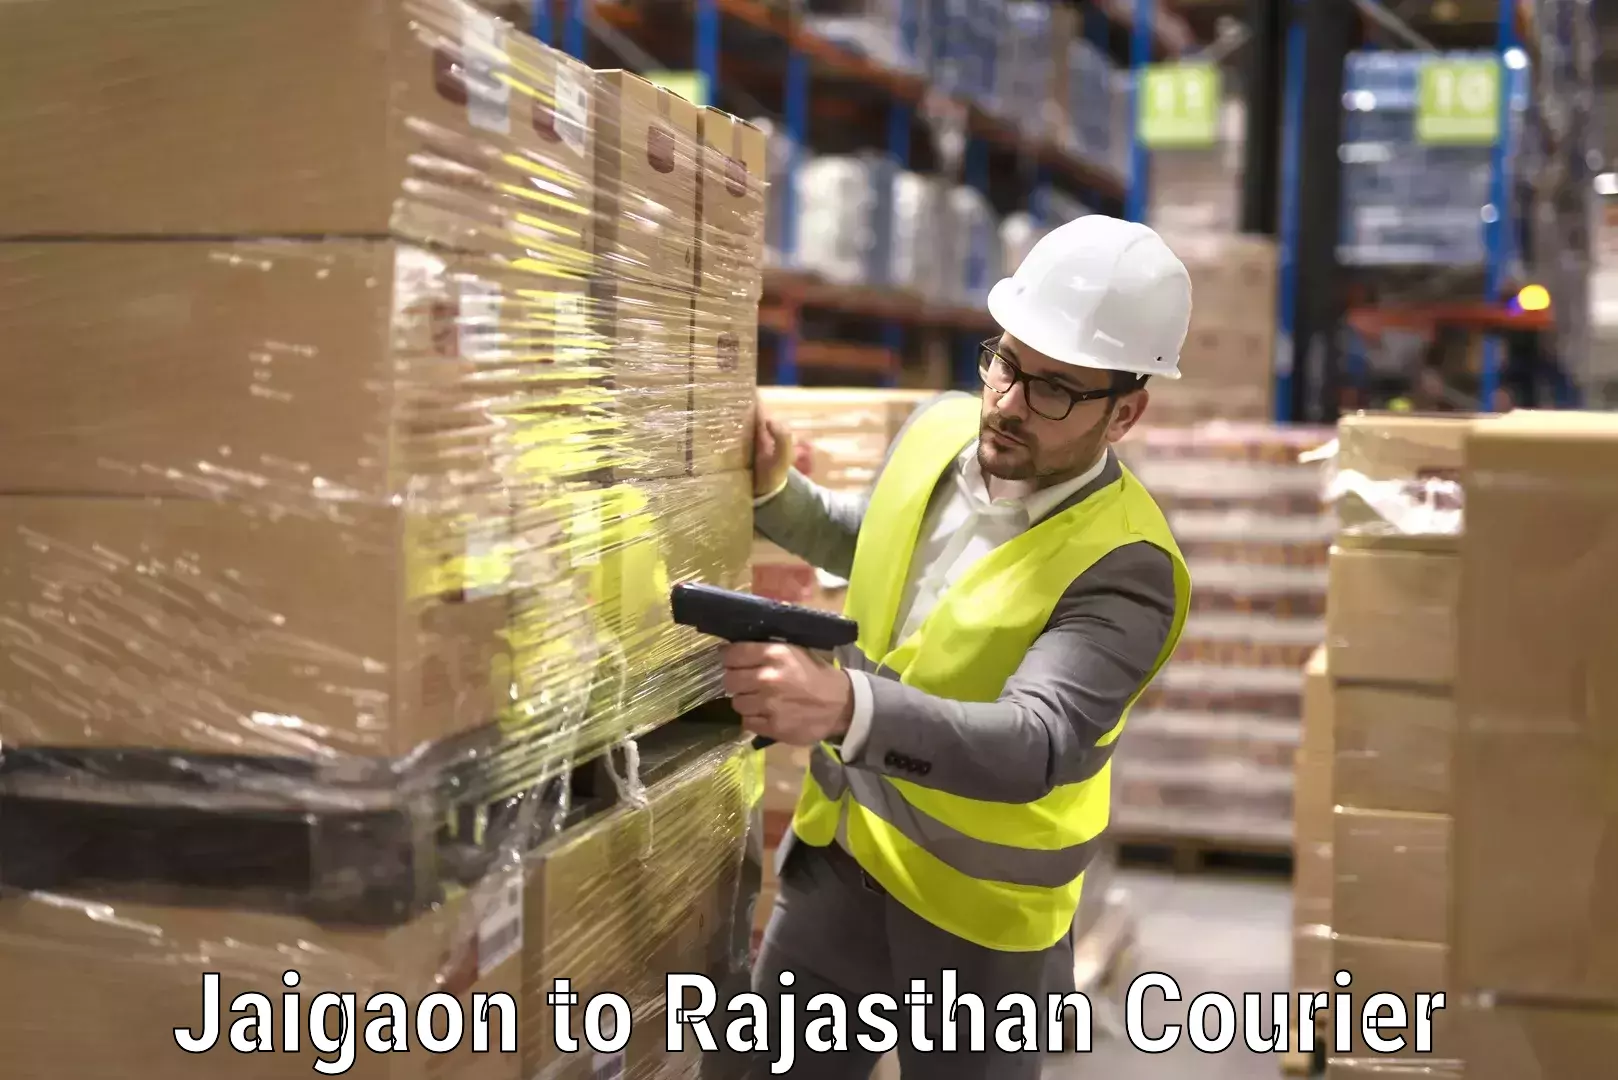 Furniture moving experts Jaigaon to Rajasthan